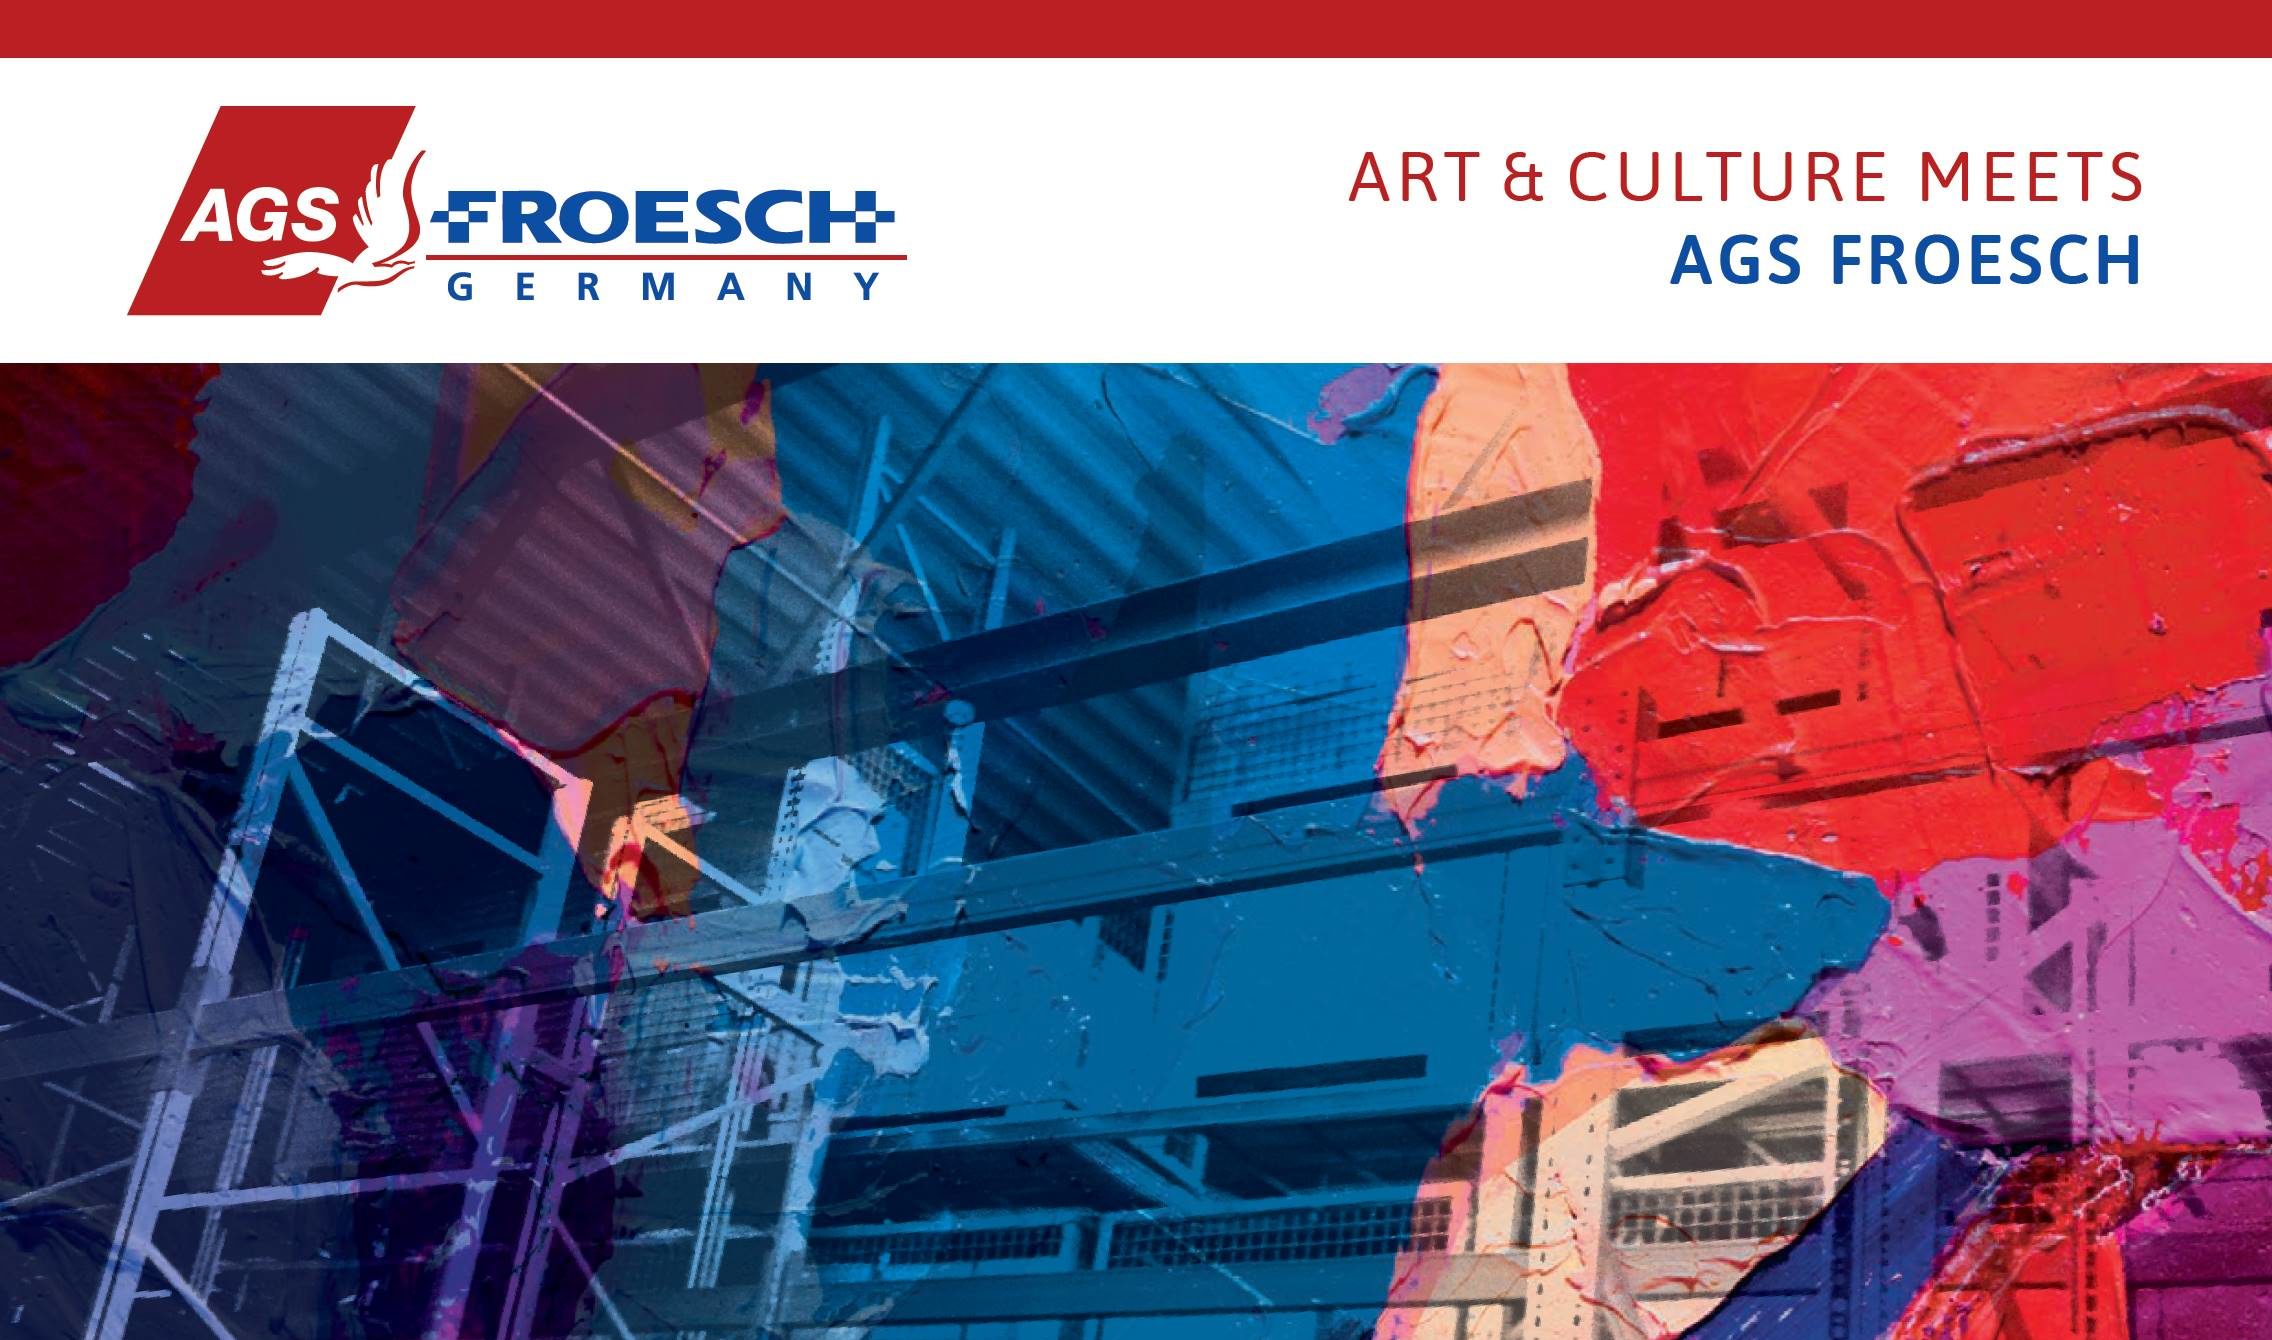 Arts & Culture meets AGS Froesch 2019